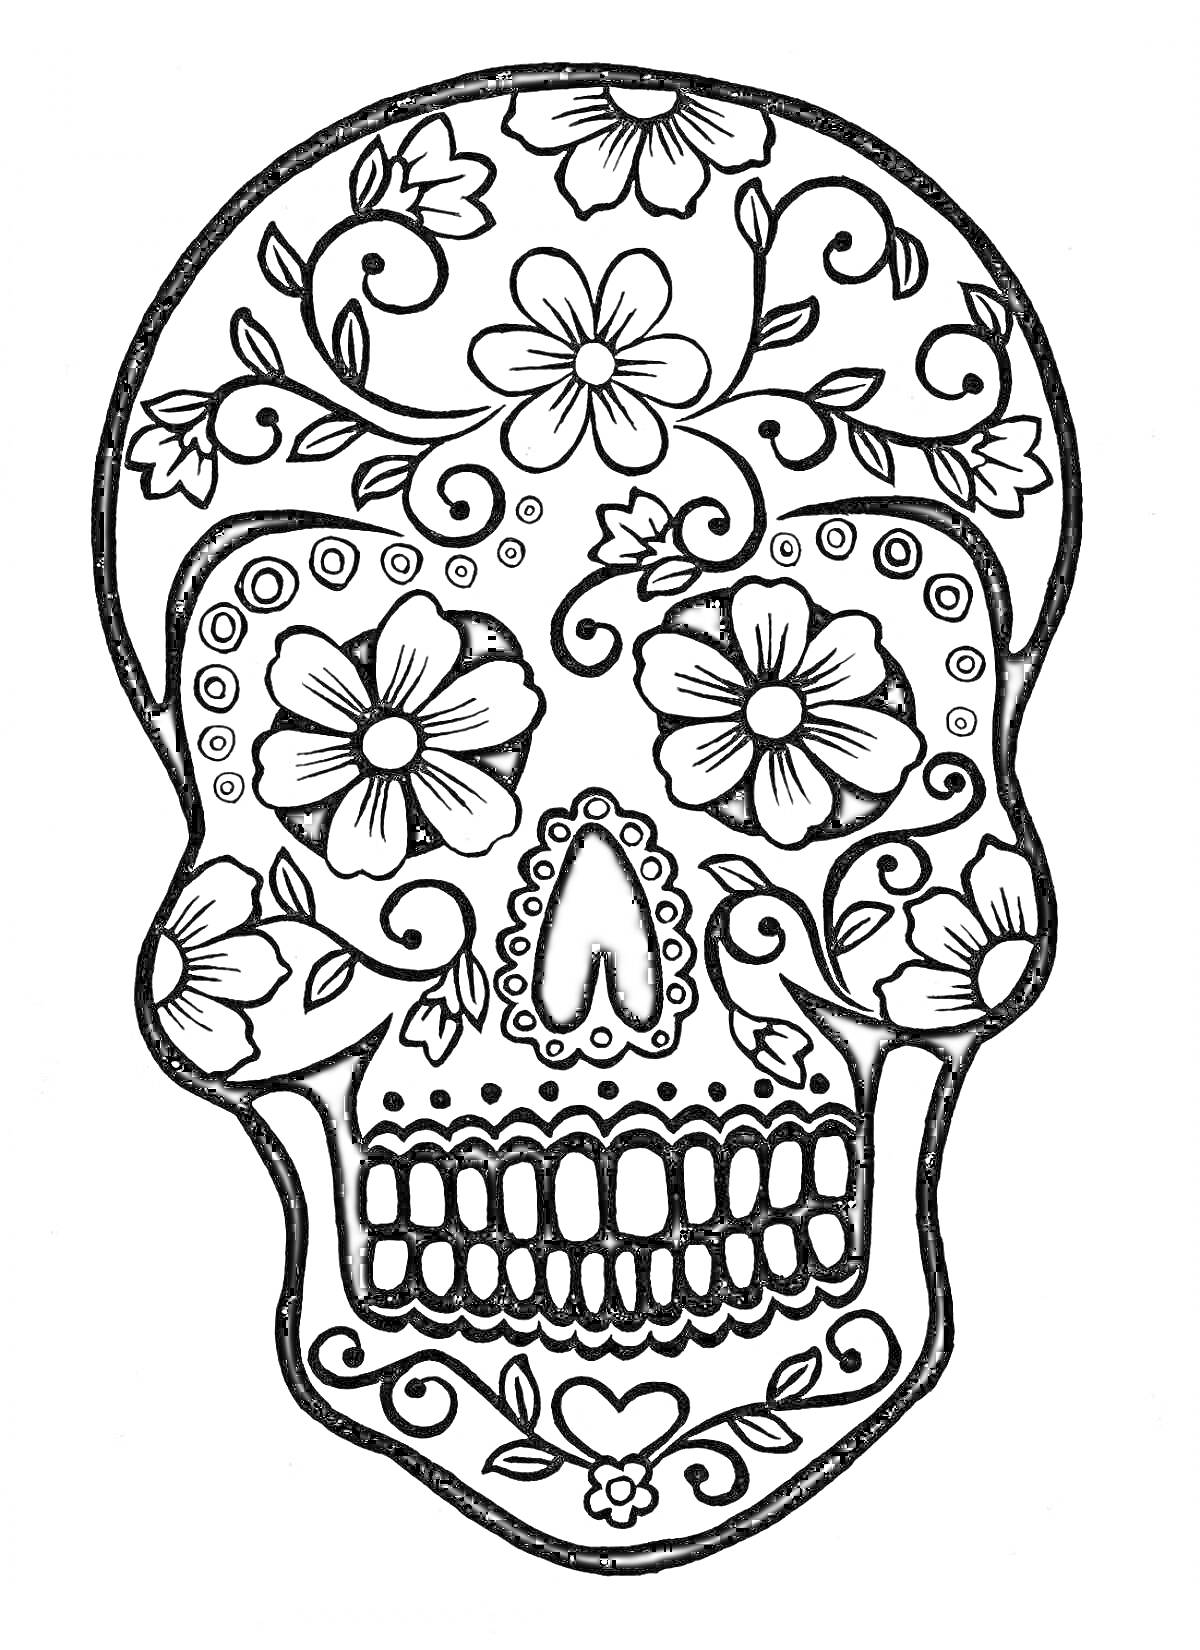 Раскраска Череп с цветочным узором, включающий цветы, листья и завитки